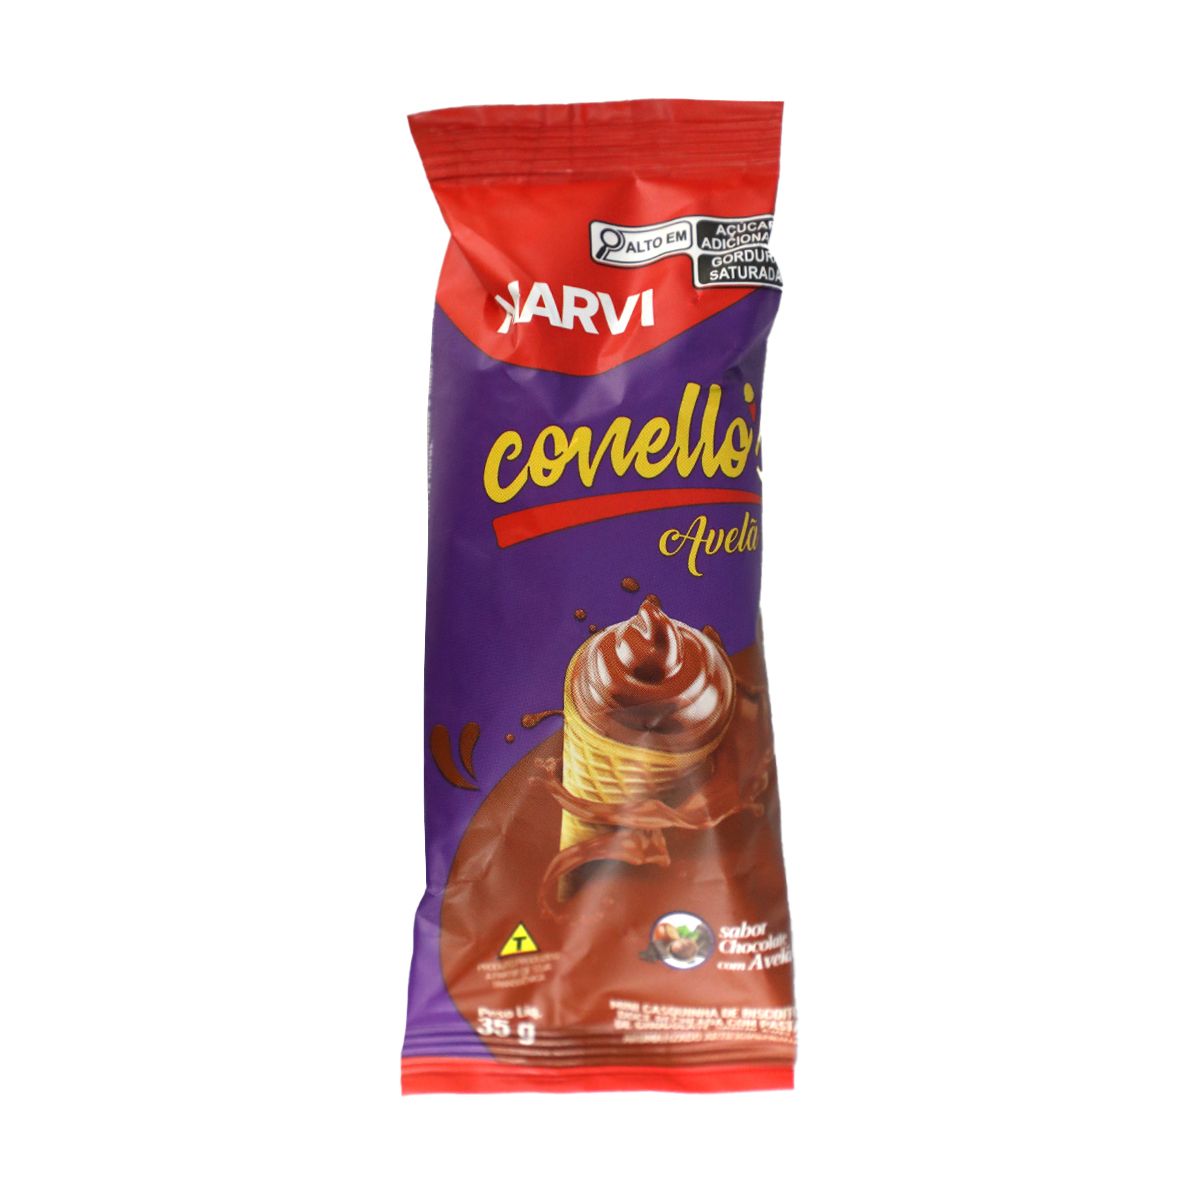 Conellos Marvi Chocolate com Avelã 35g